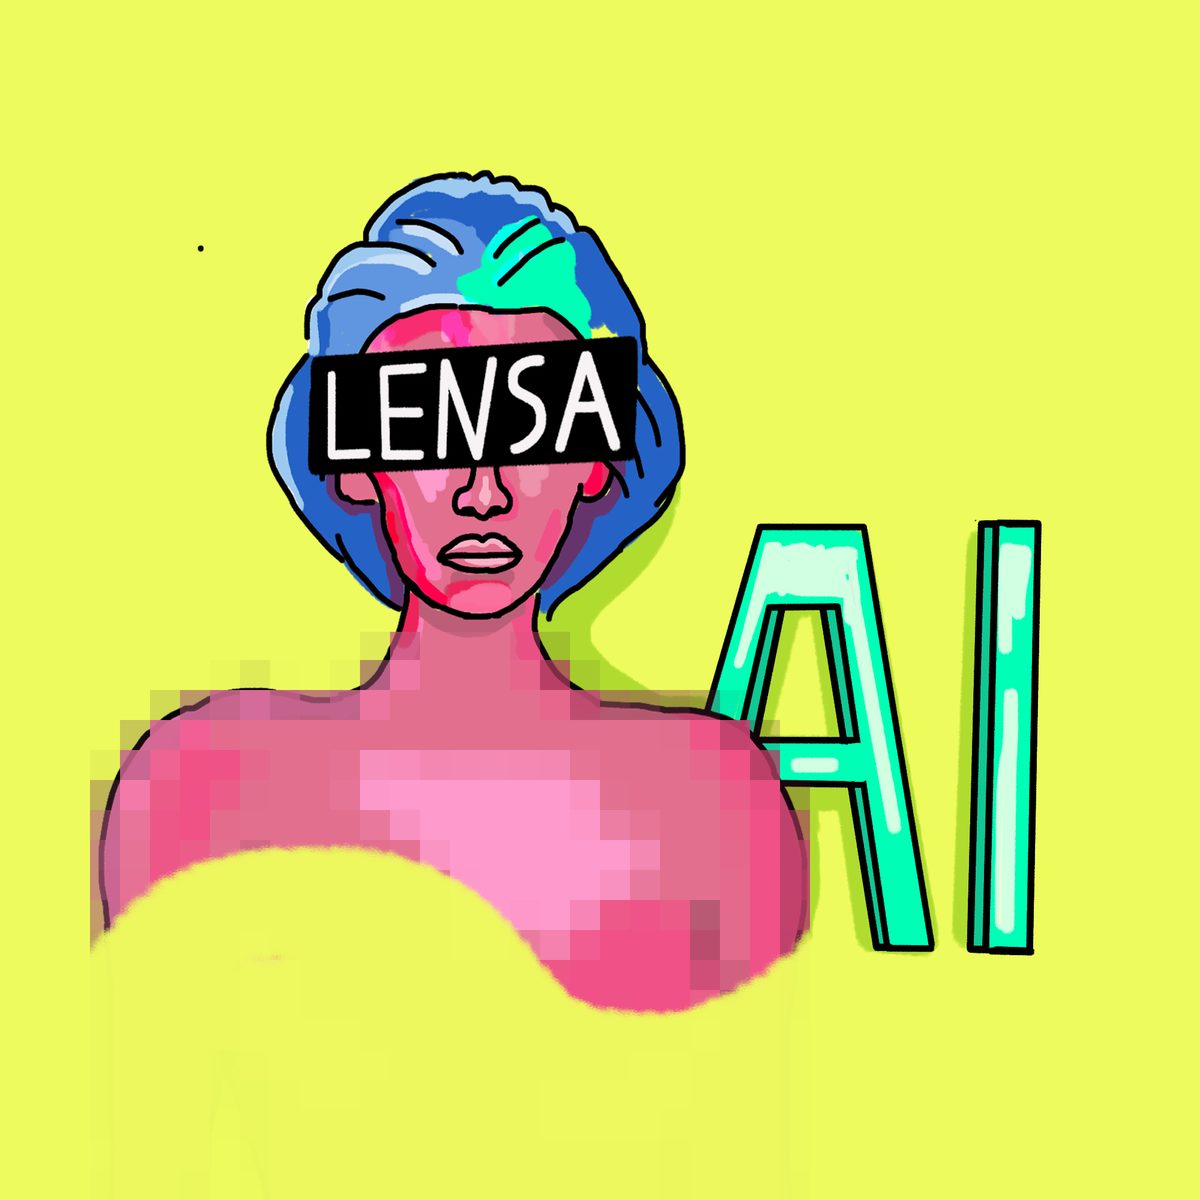 Приложение Lensa может генерировать софт-порно с людьми без их согласия